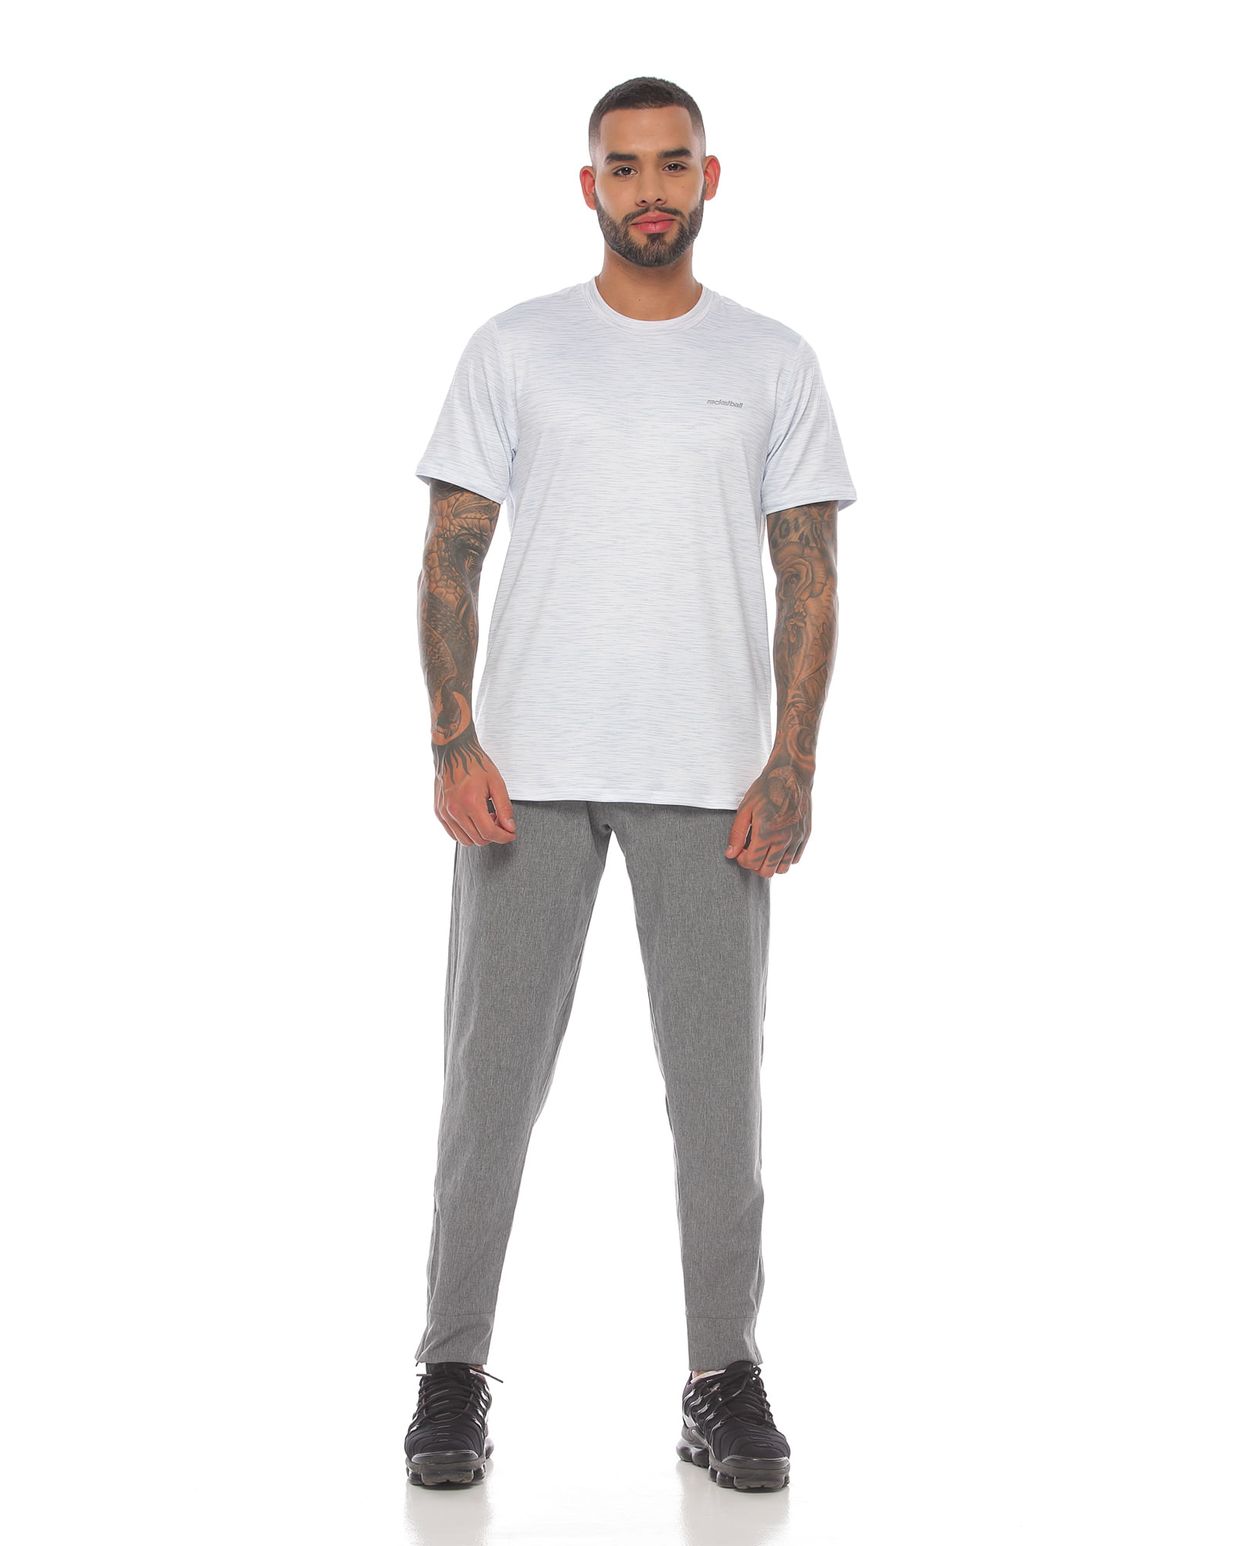 modelo con Camiseta Deportiva Manga Corta Blanca con pantalon deportivo para Hombre